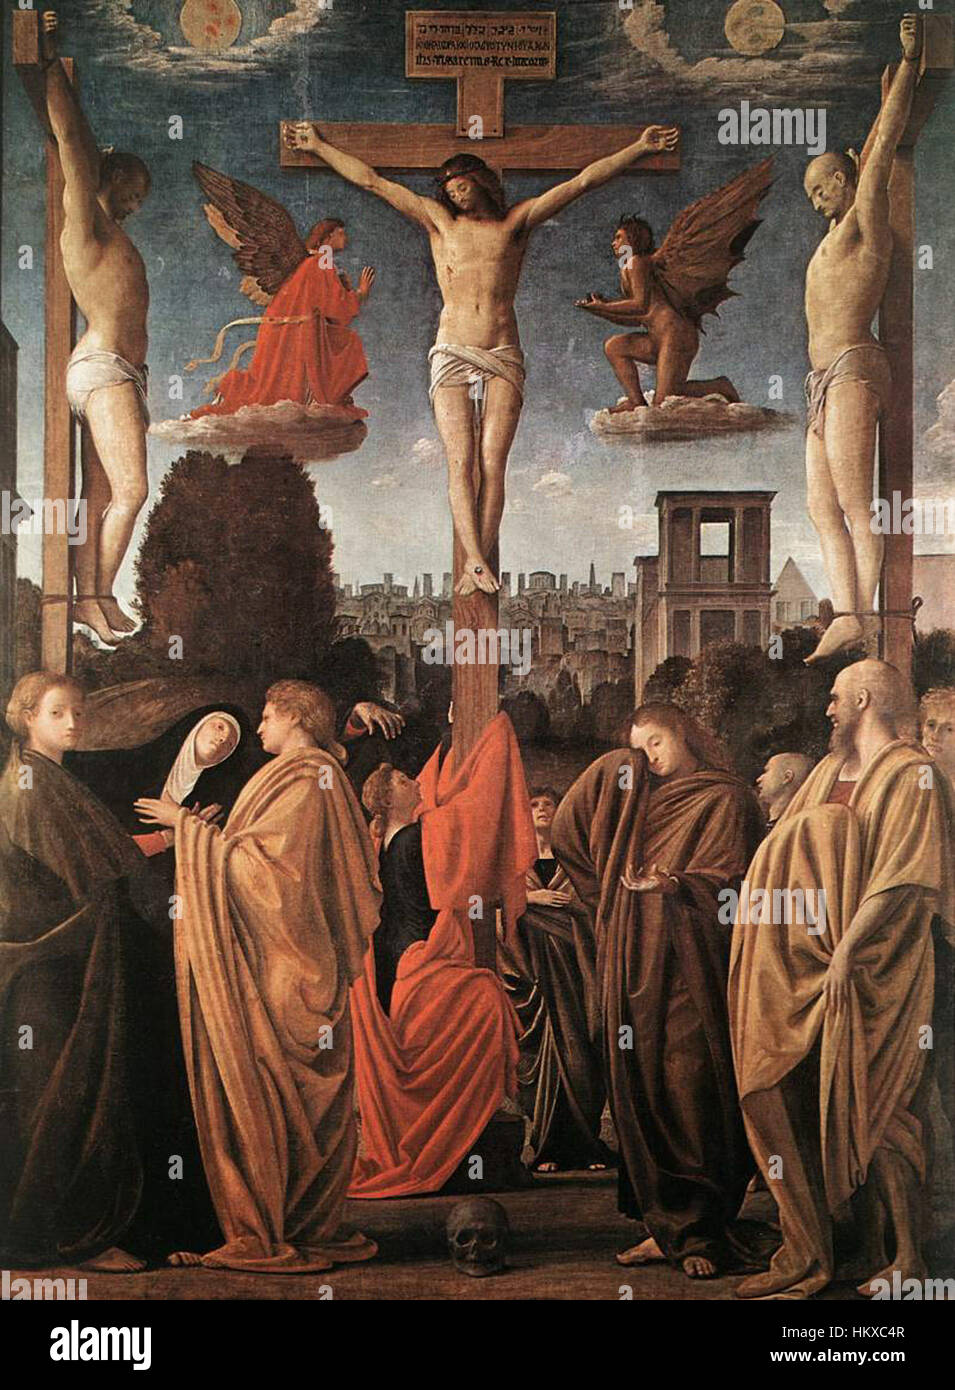 Bramantino - Crucifixion - WGA03068 Stock Photo